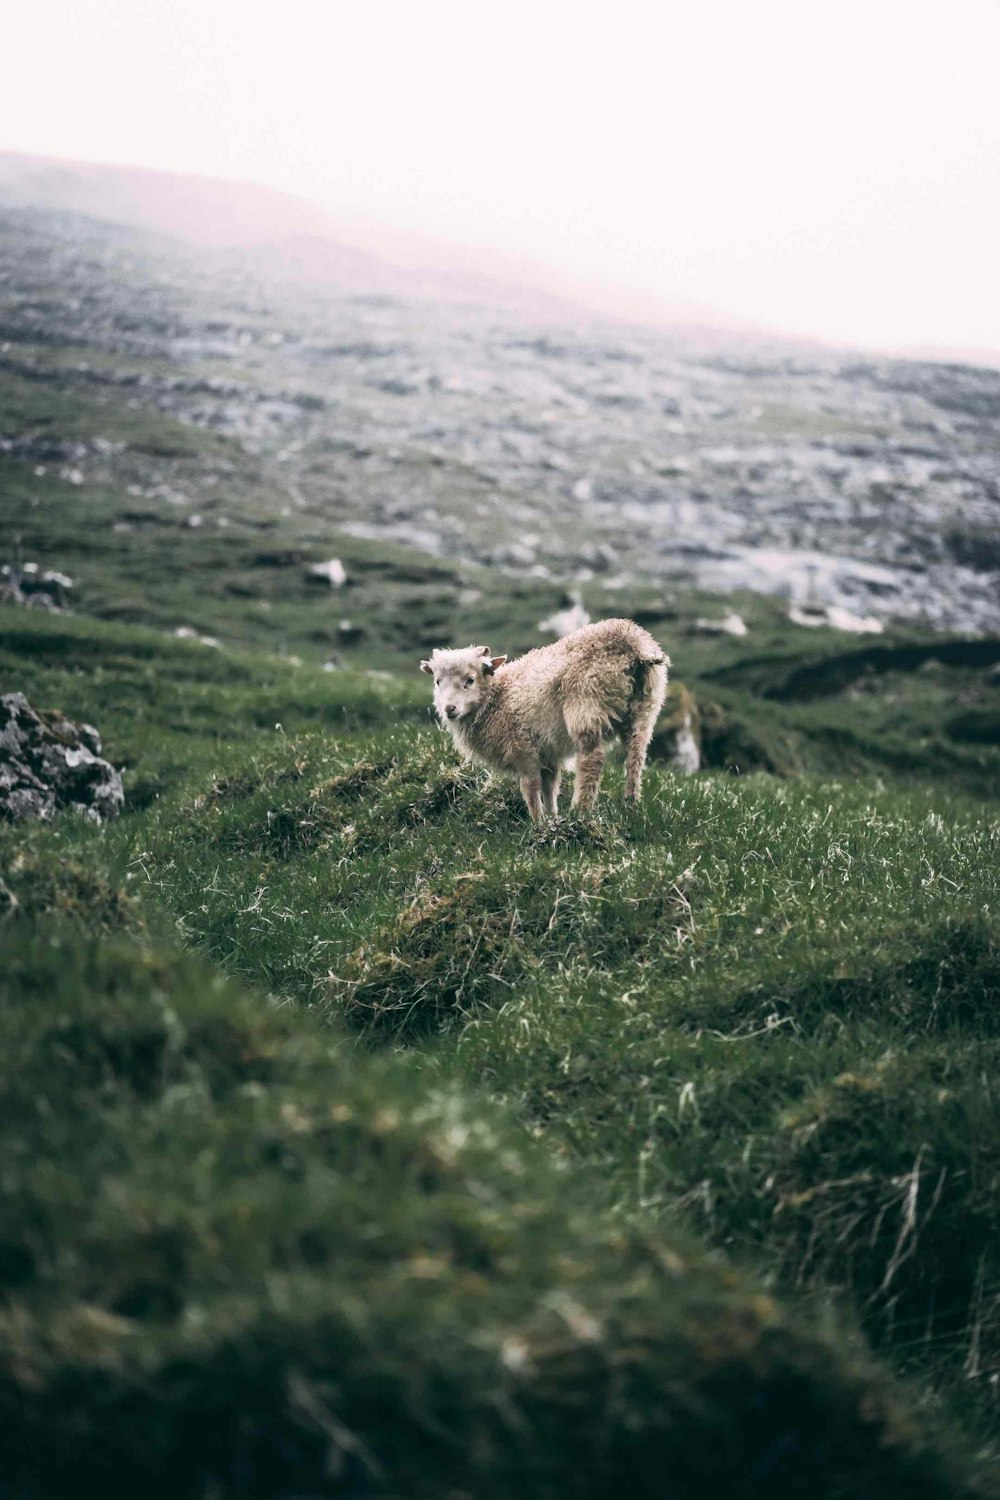 Ein Schaf, das auf einem üppig grünen Hügel steht